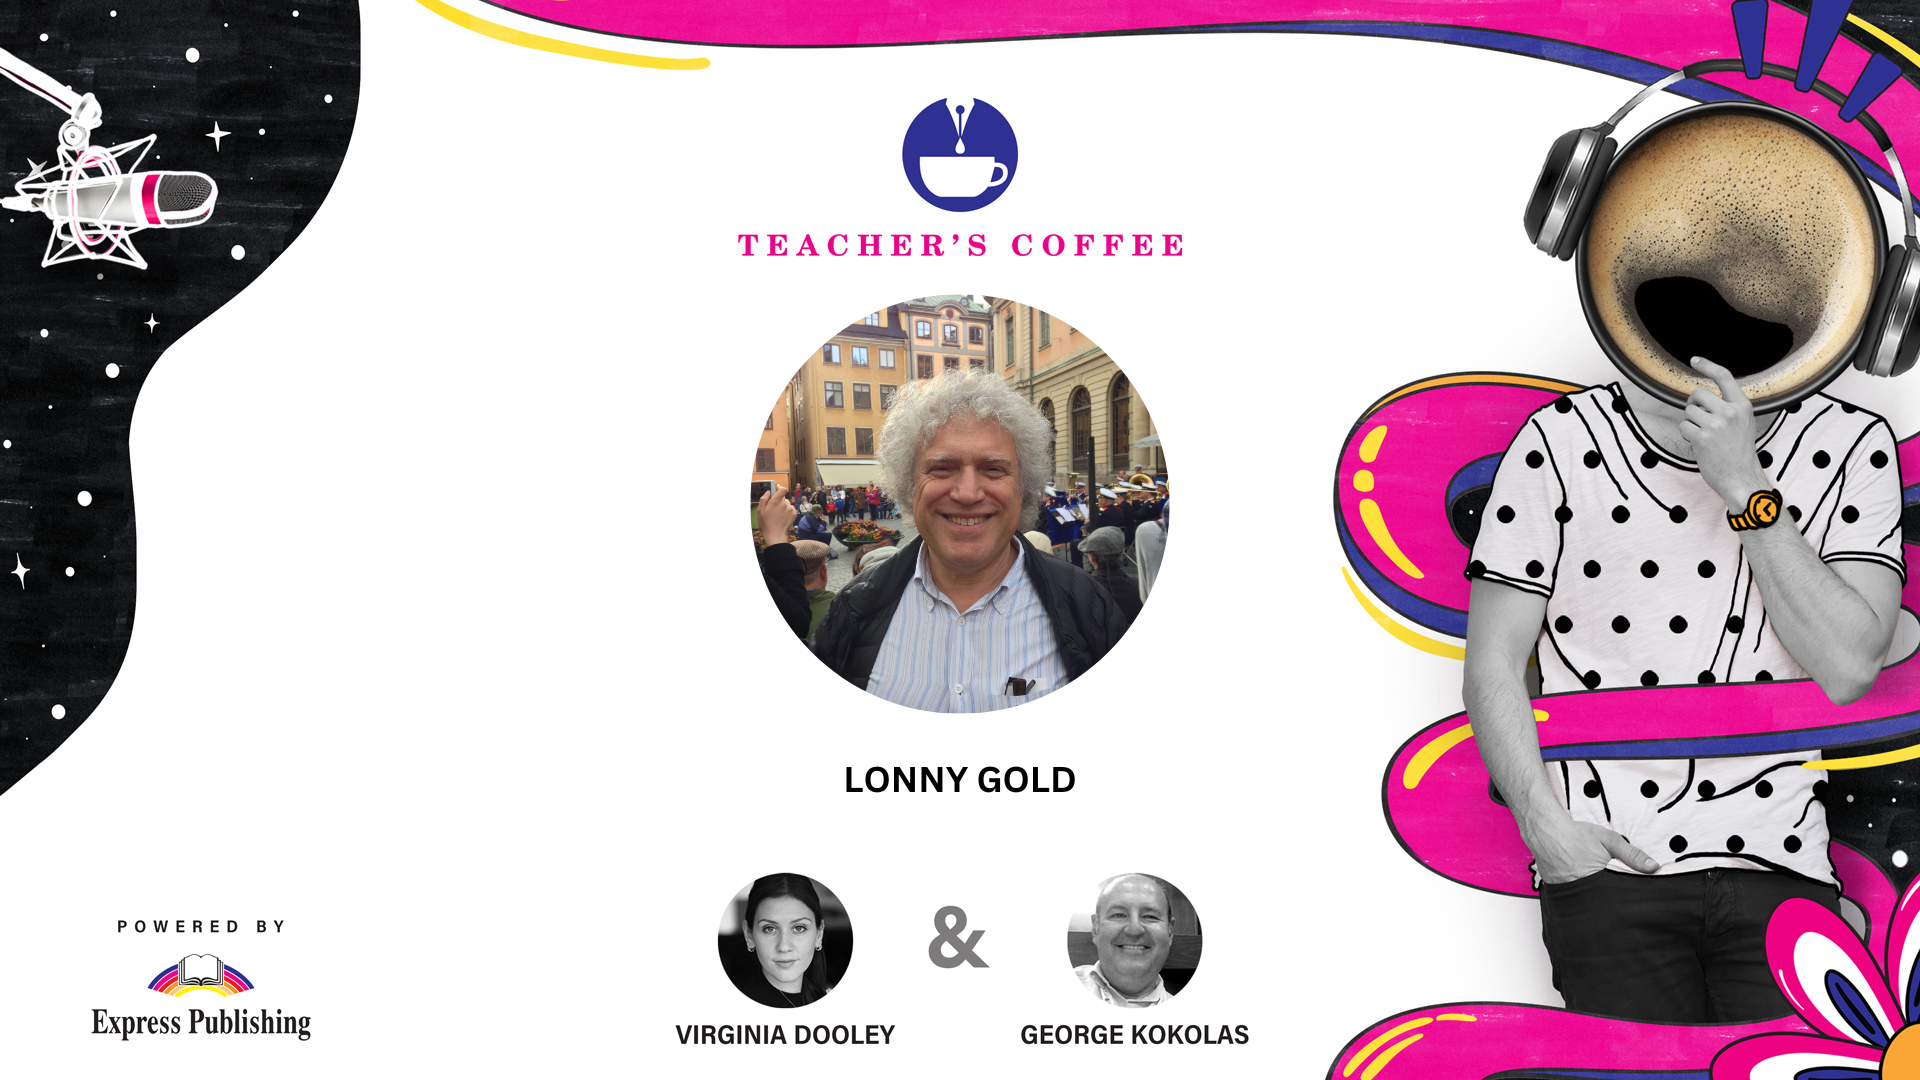 S07E15 Teacher's Coffee with Lonny Gold